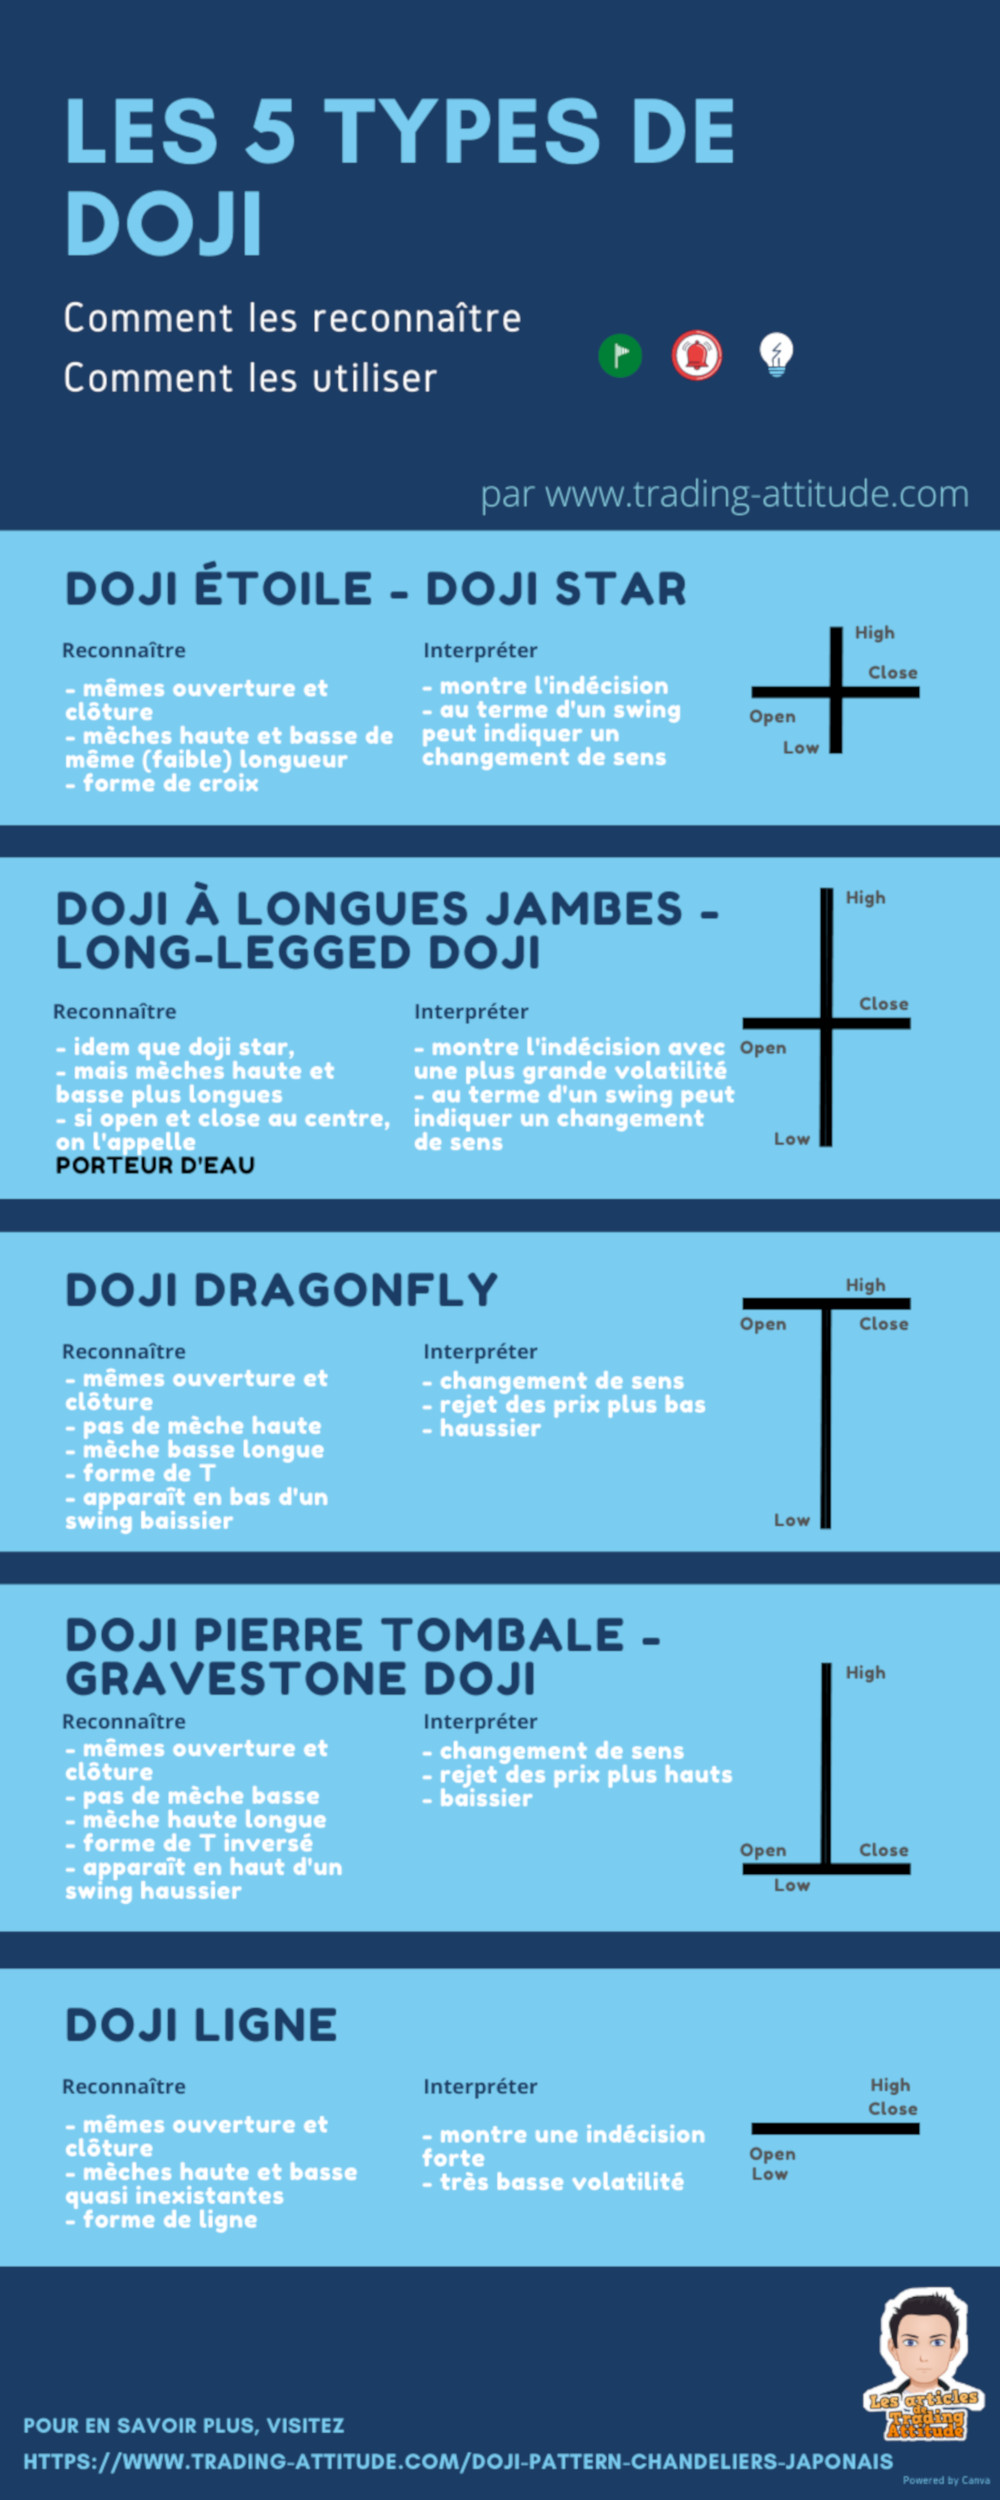 Pattern de chandeliers japonais : les 5 types de Doji